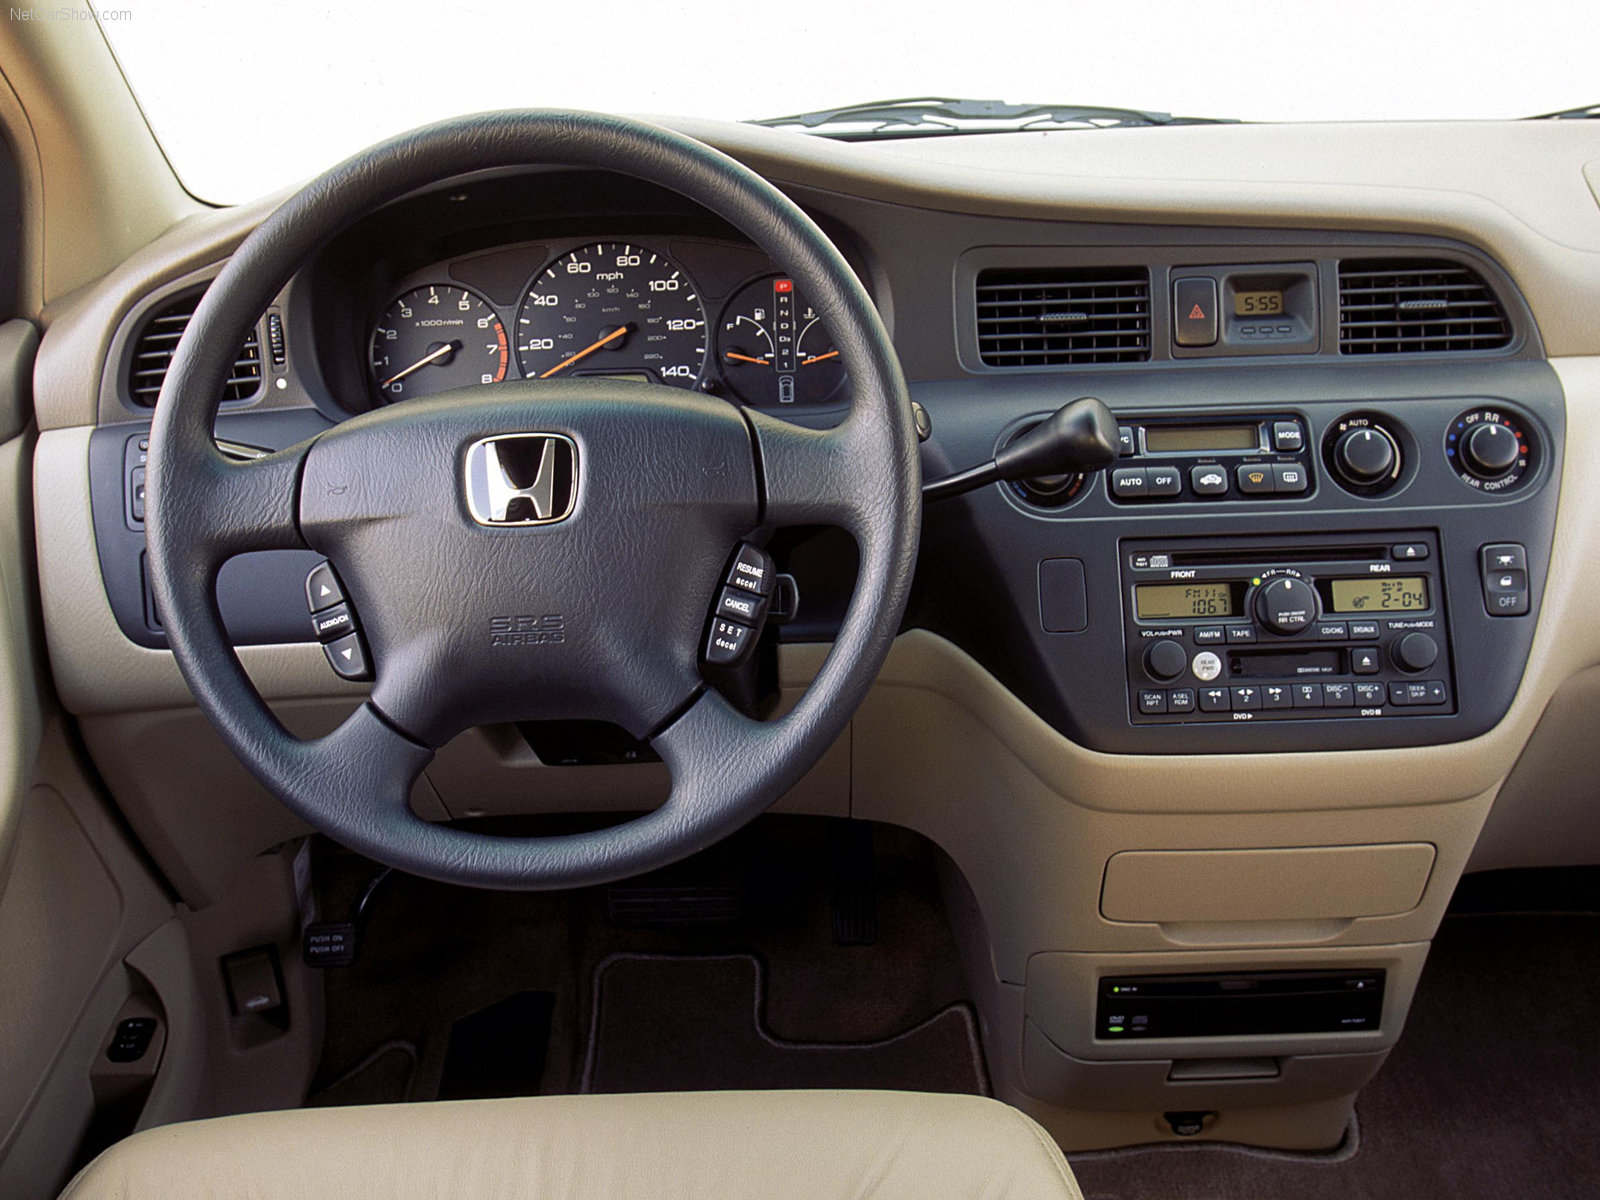 Honda Odyssey 2002 Honda-Odyssey-2002-1600-05